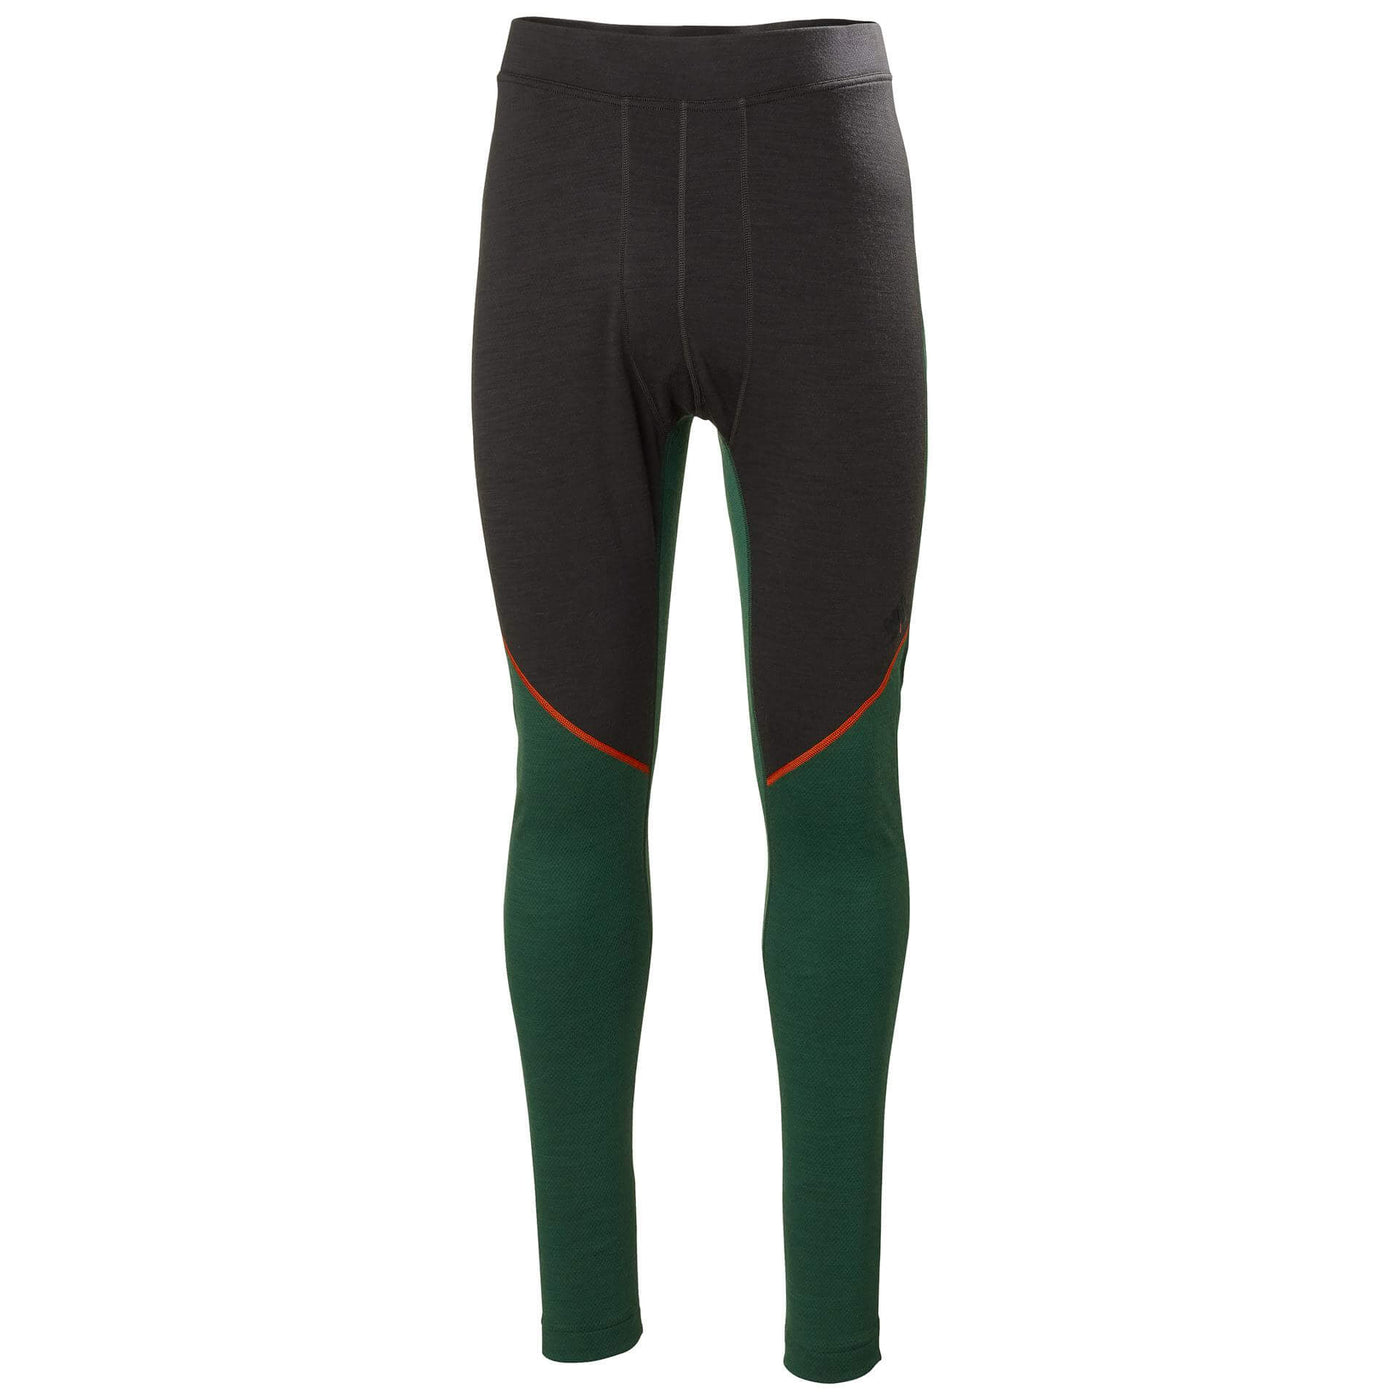 Helly Hansen Lifa Merino Baselayer Trousers Green/Ebony 1 Front #colour_green-ebony